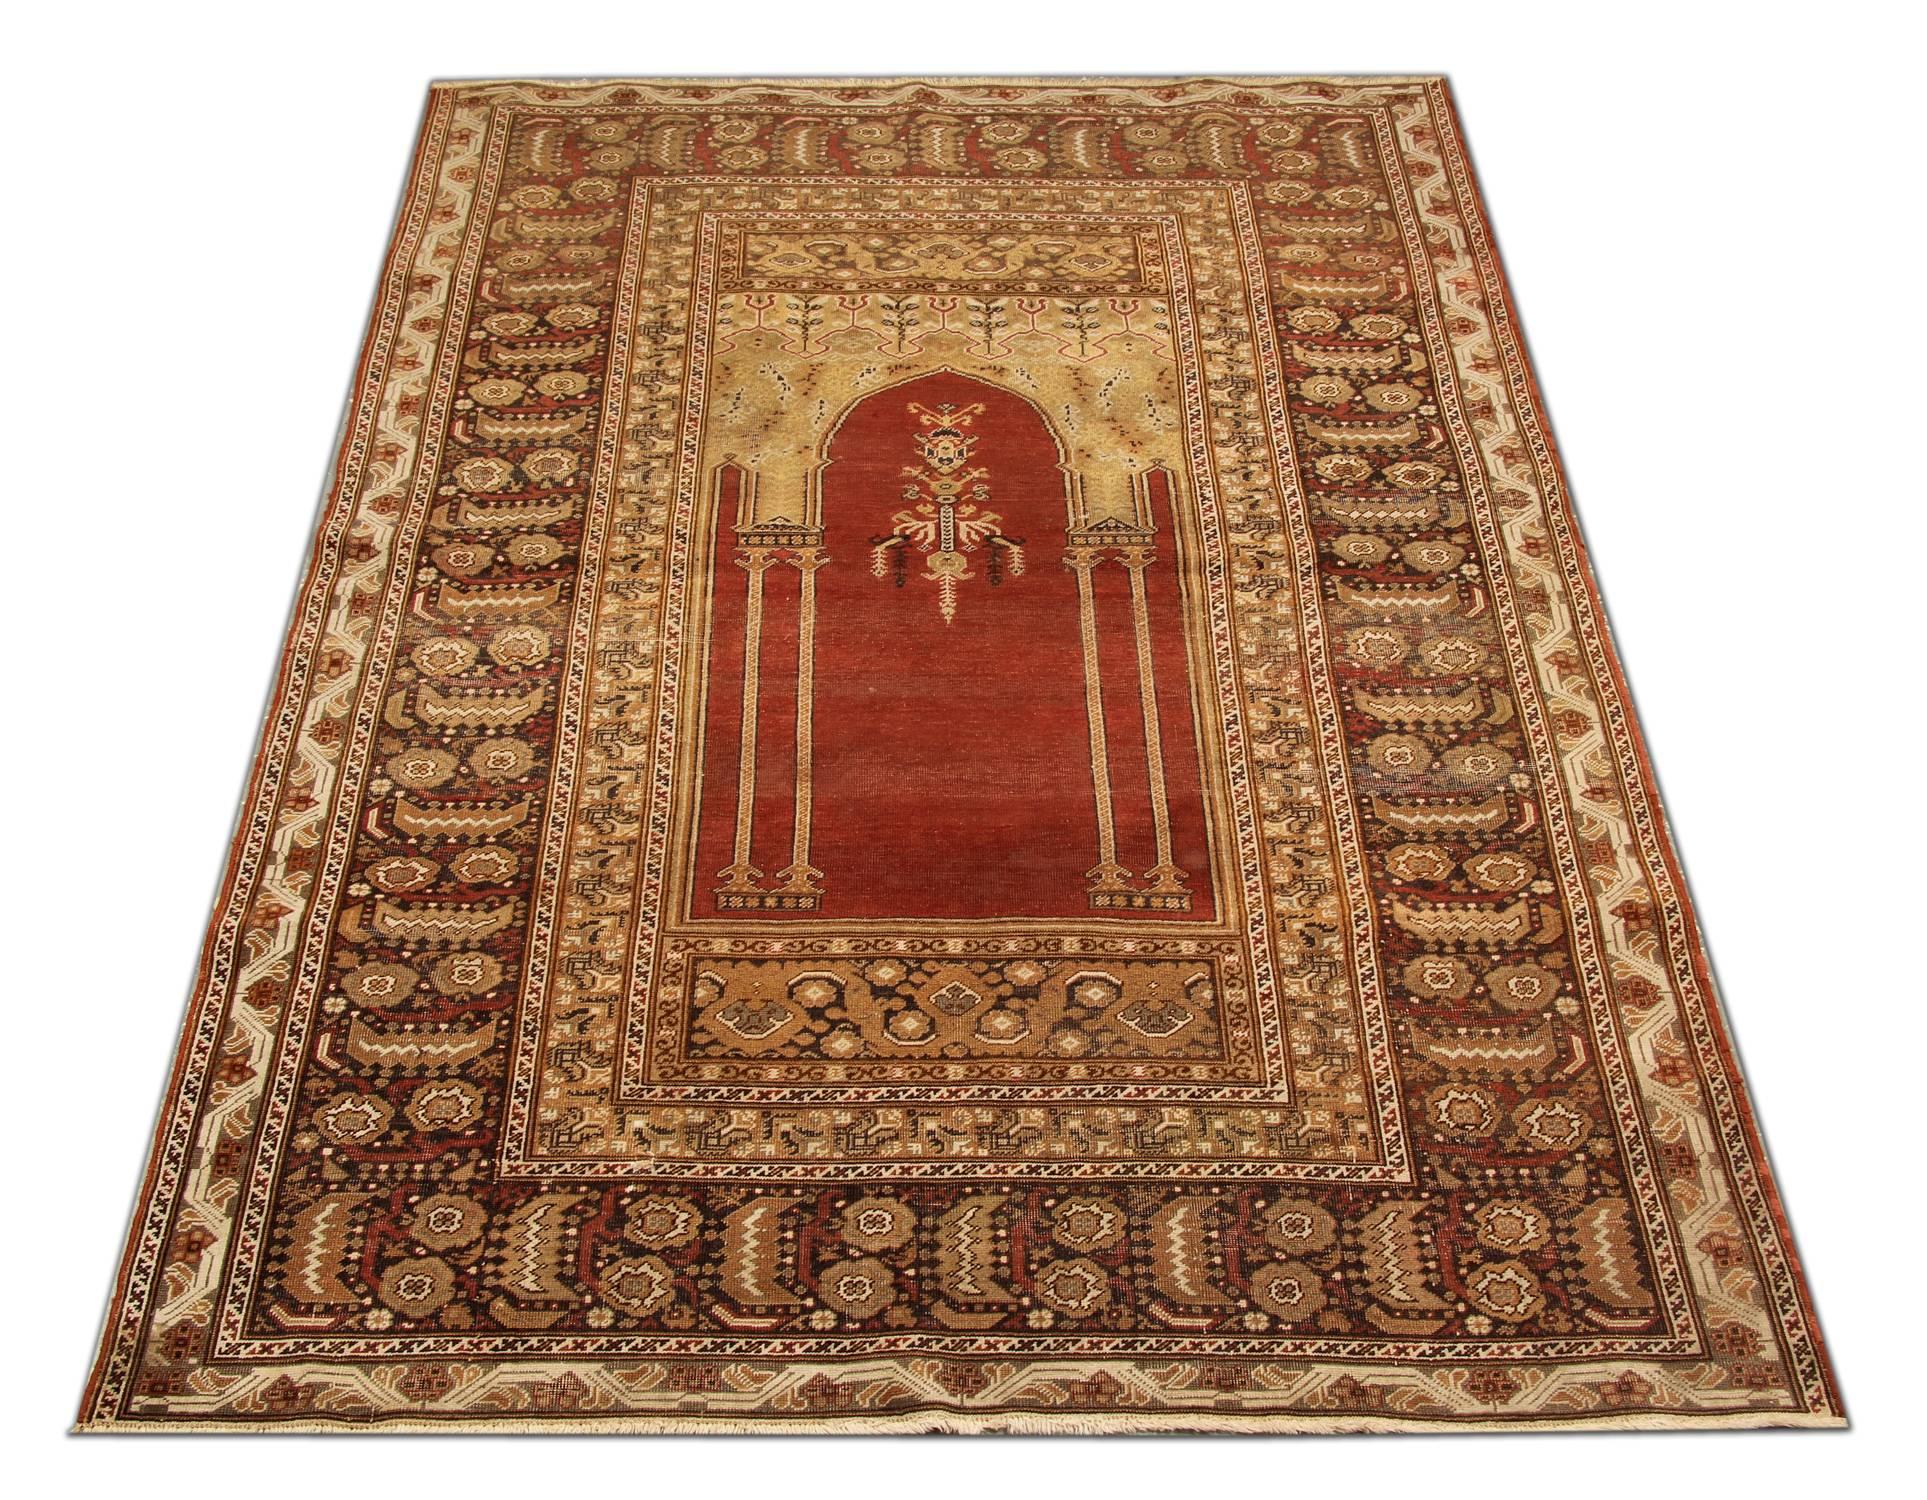 Ce motif des tapis turcs est le plus caractéristique et est connu comme motif de prière depuis plus d'un millier d'années. La connotation du design remonte à l'Antiquité, où le plan architectural était inventé et mis en œuvre par les créateurs de